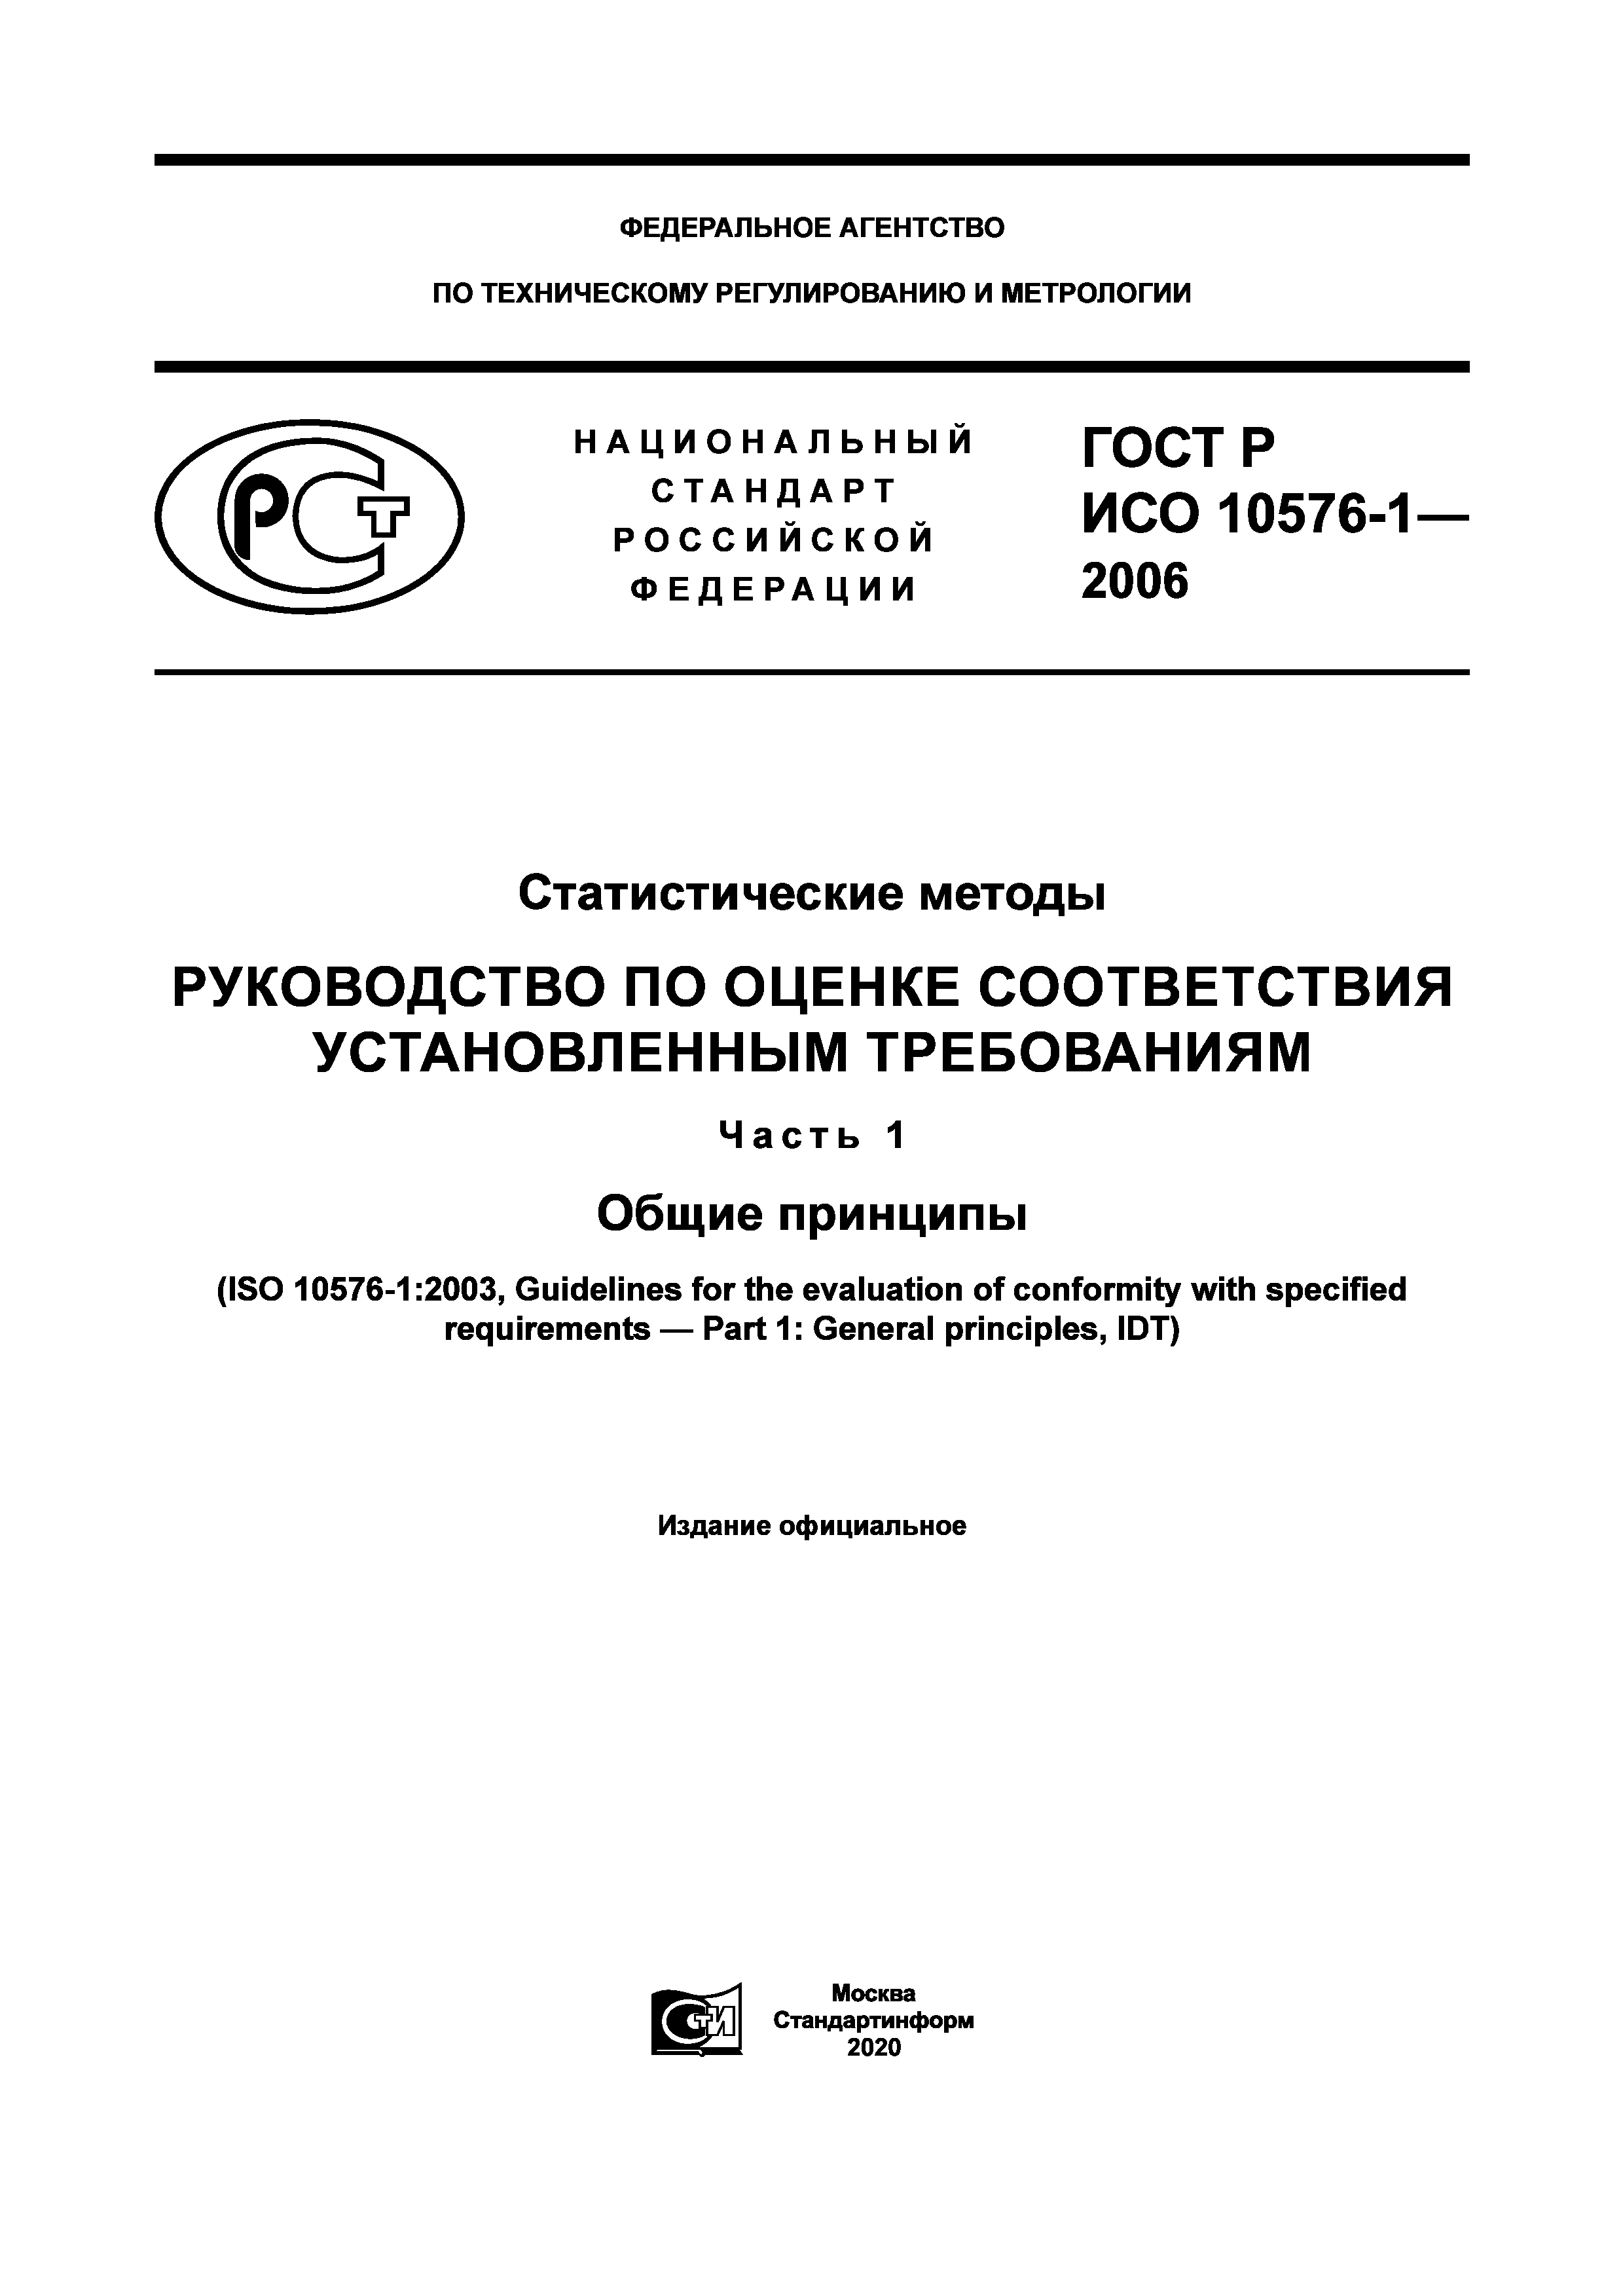 ГОСТ Р ИСО 10576-1-2006